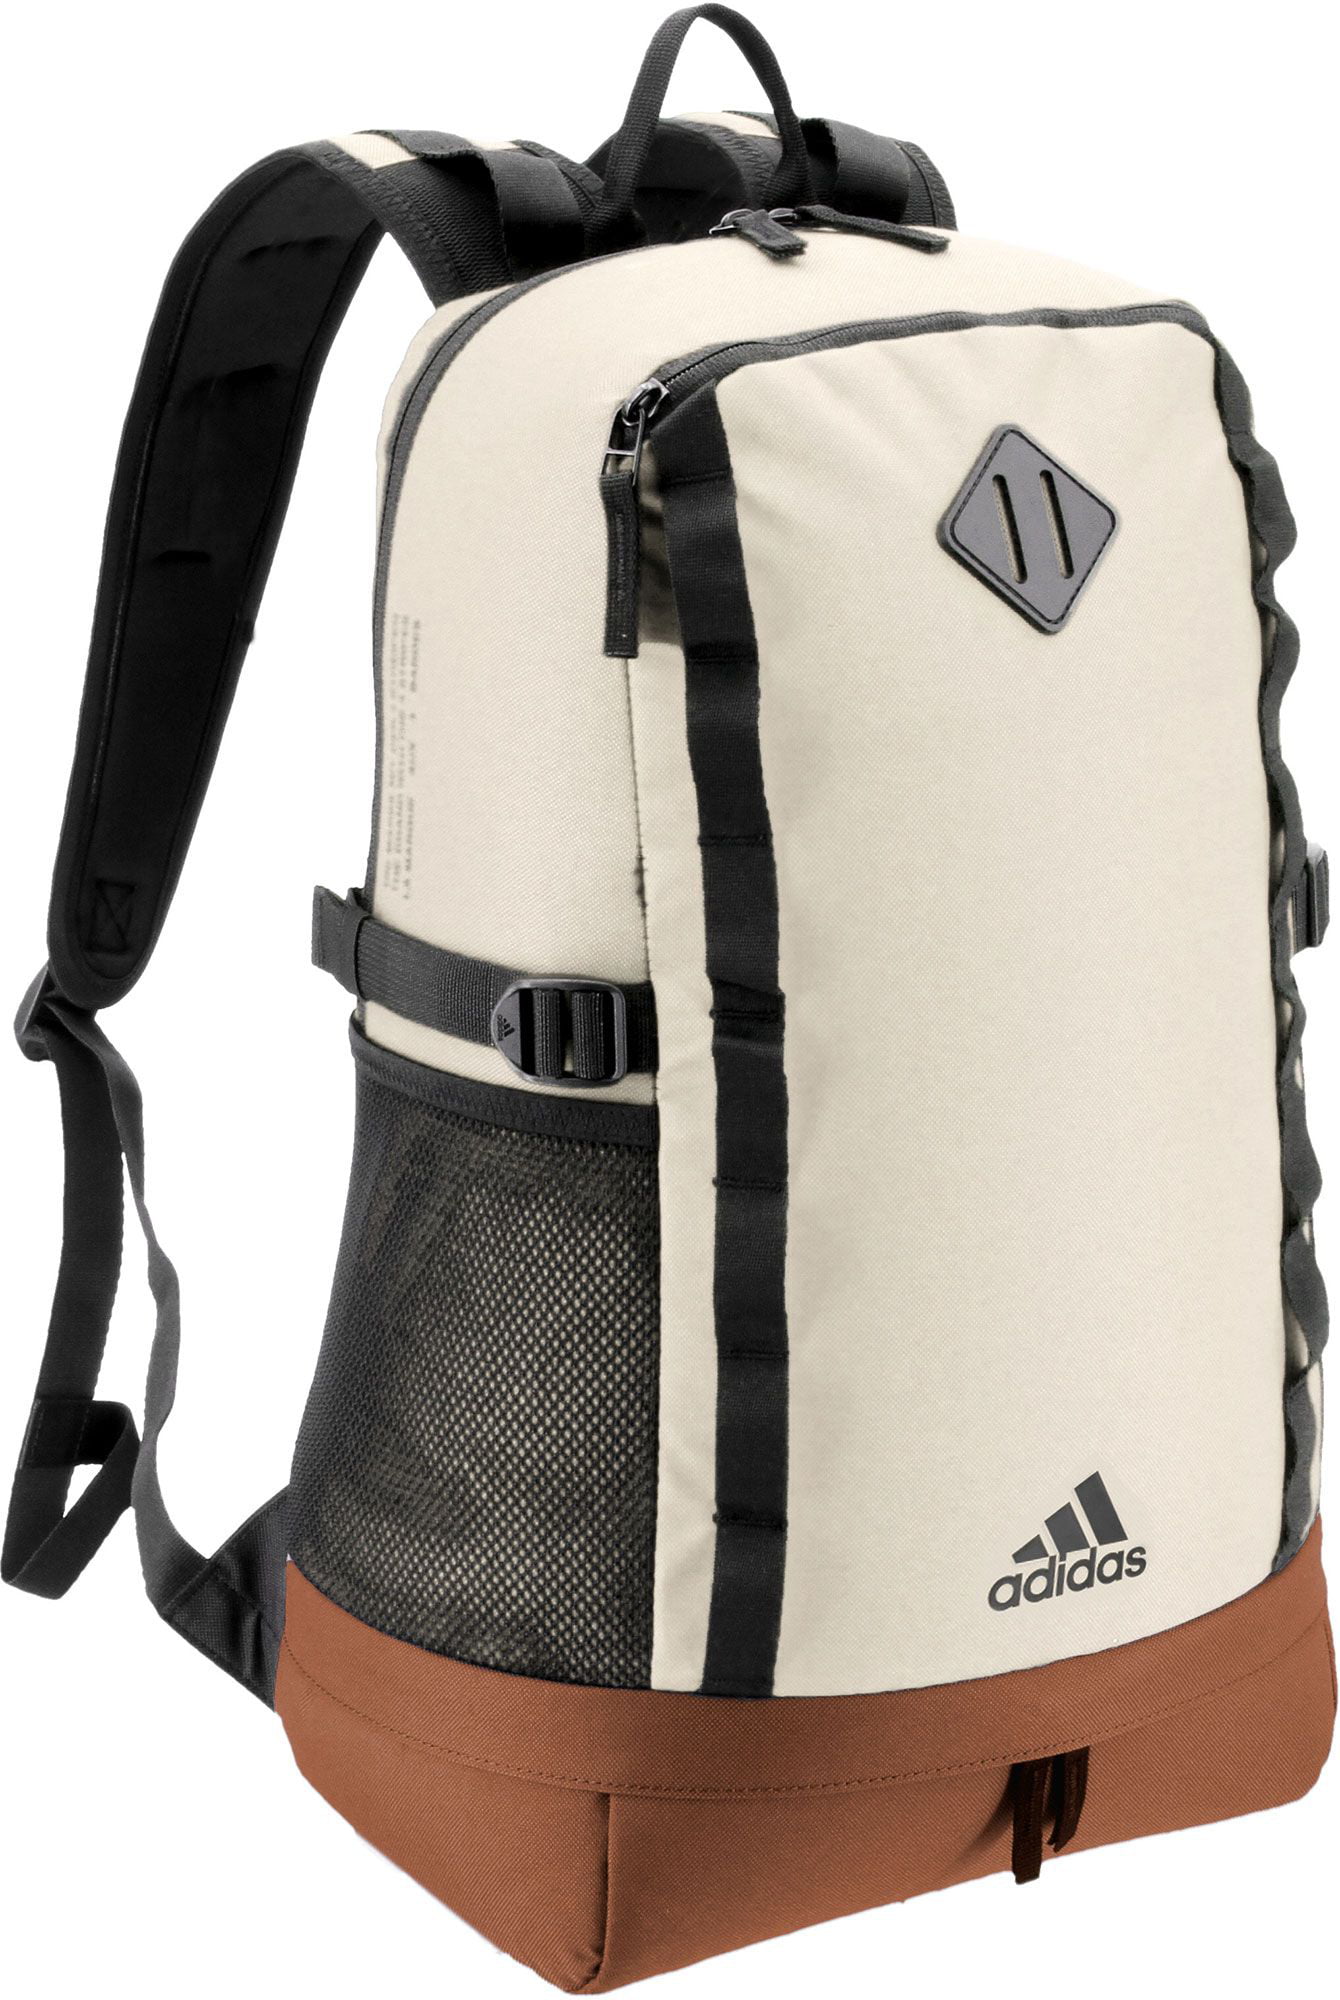 Adidas - adidas Franchise Backpack 